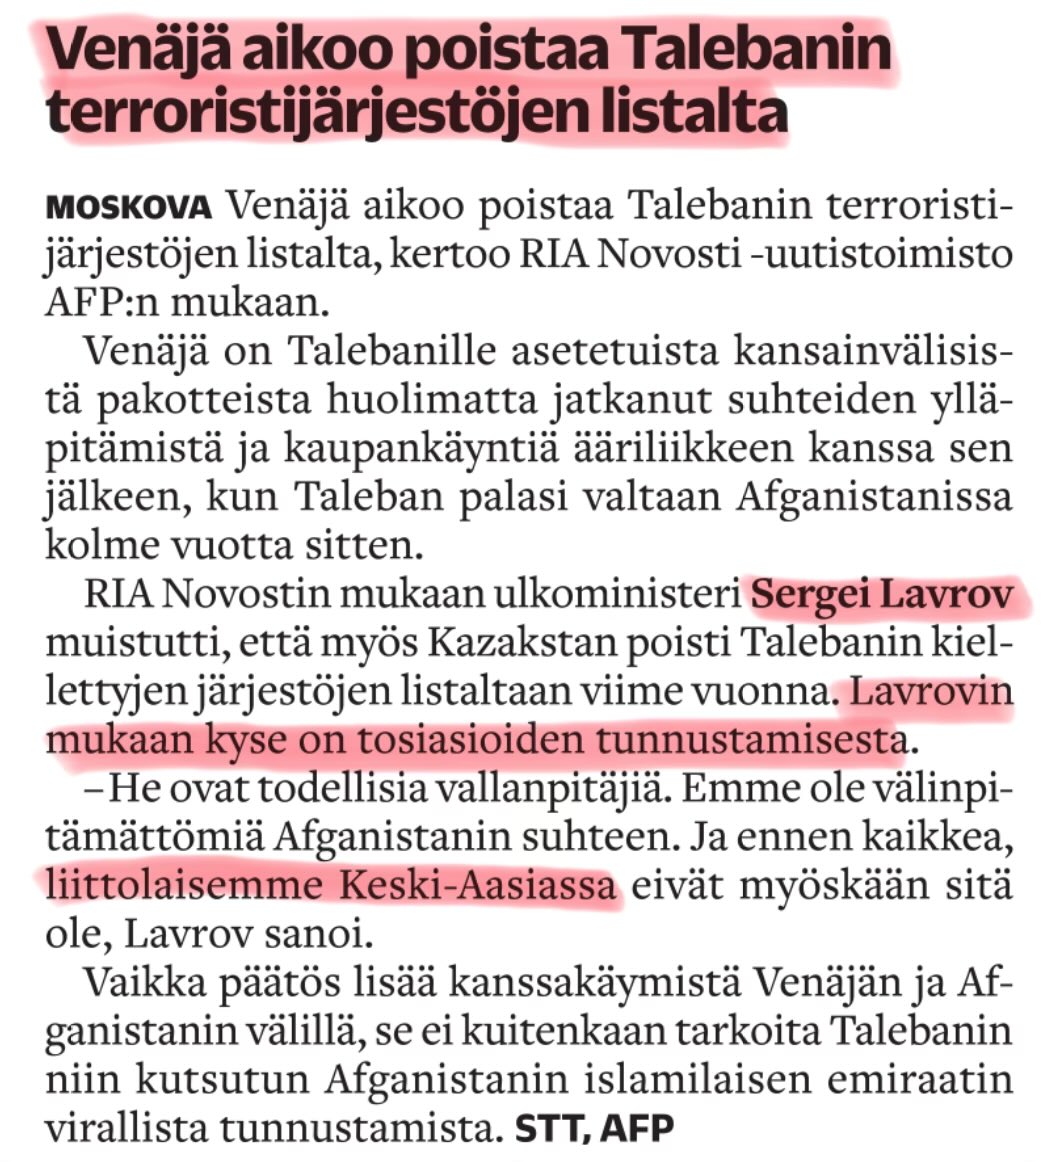 Ei terroristi terroristin silmää noki. #SlavaUkraïni #nato #turpo #terrorismi